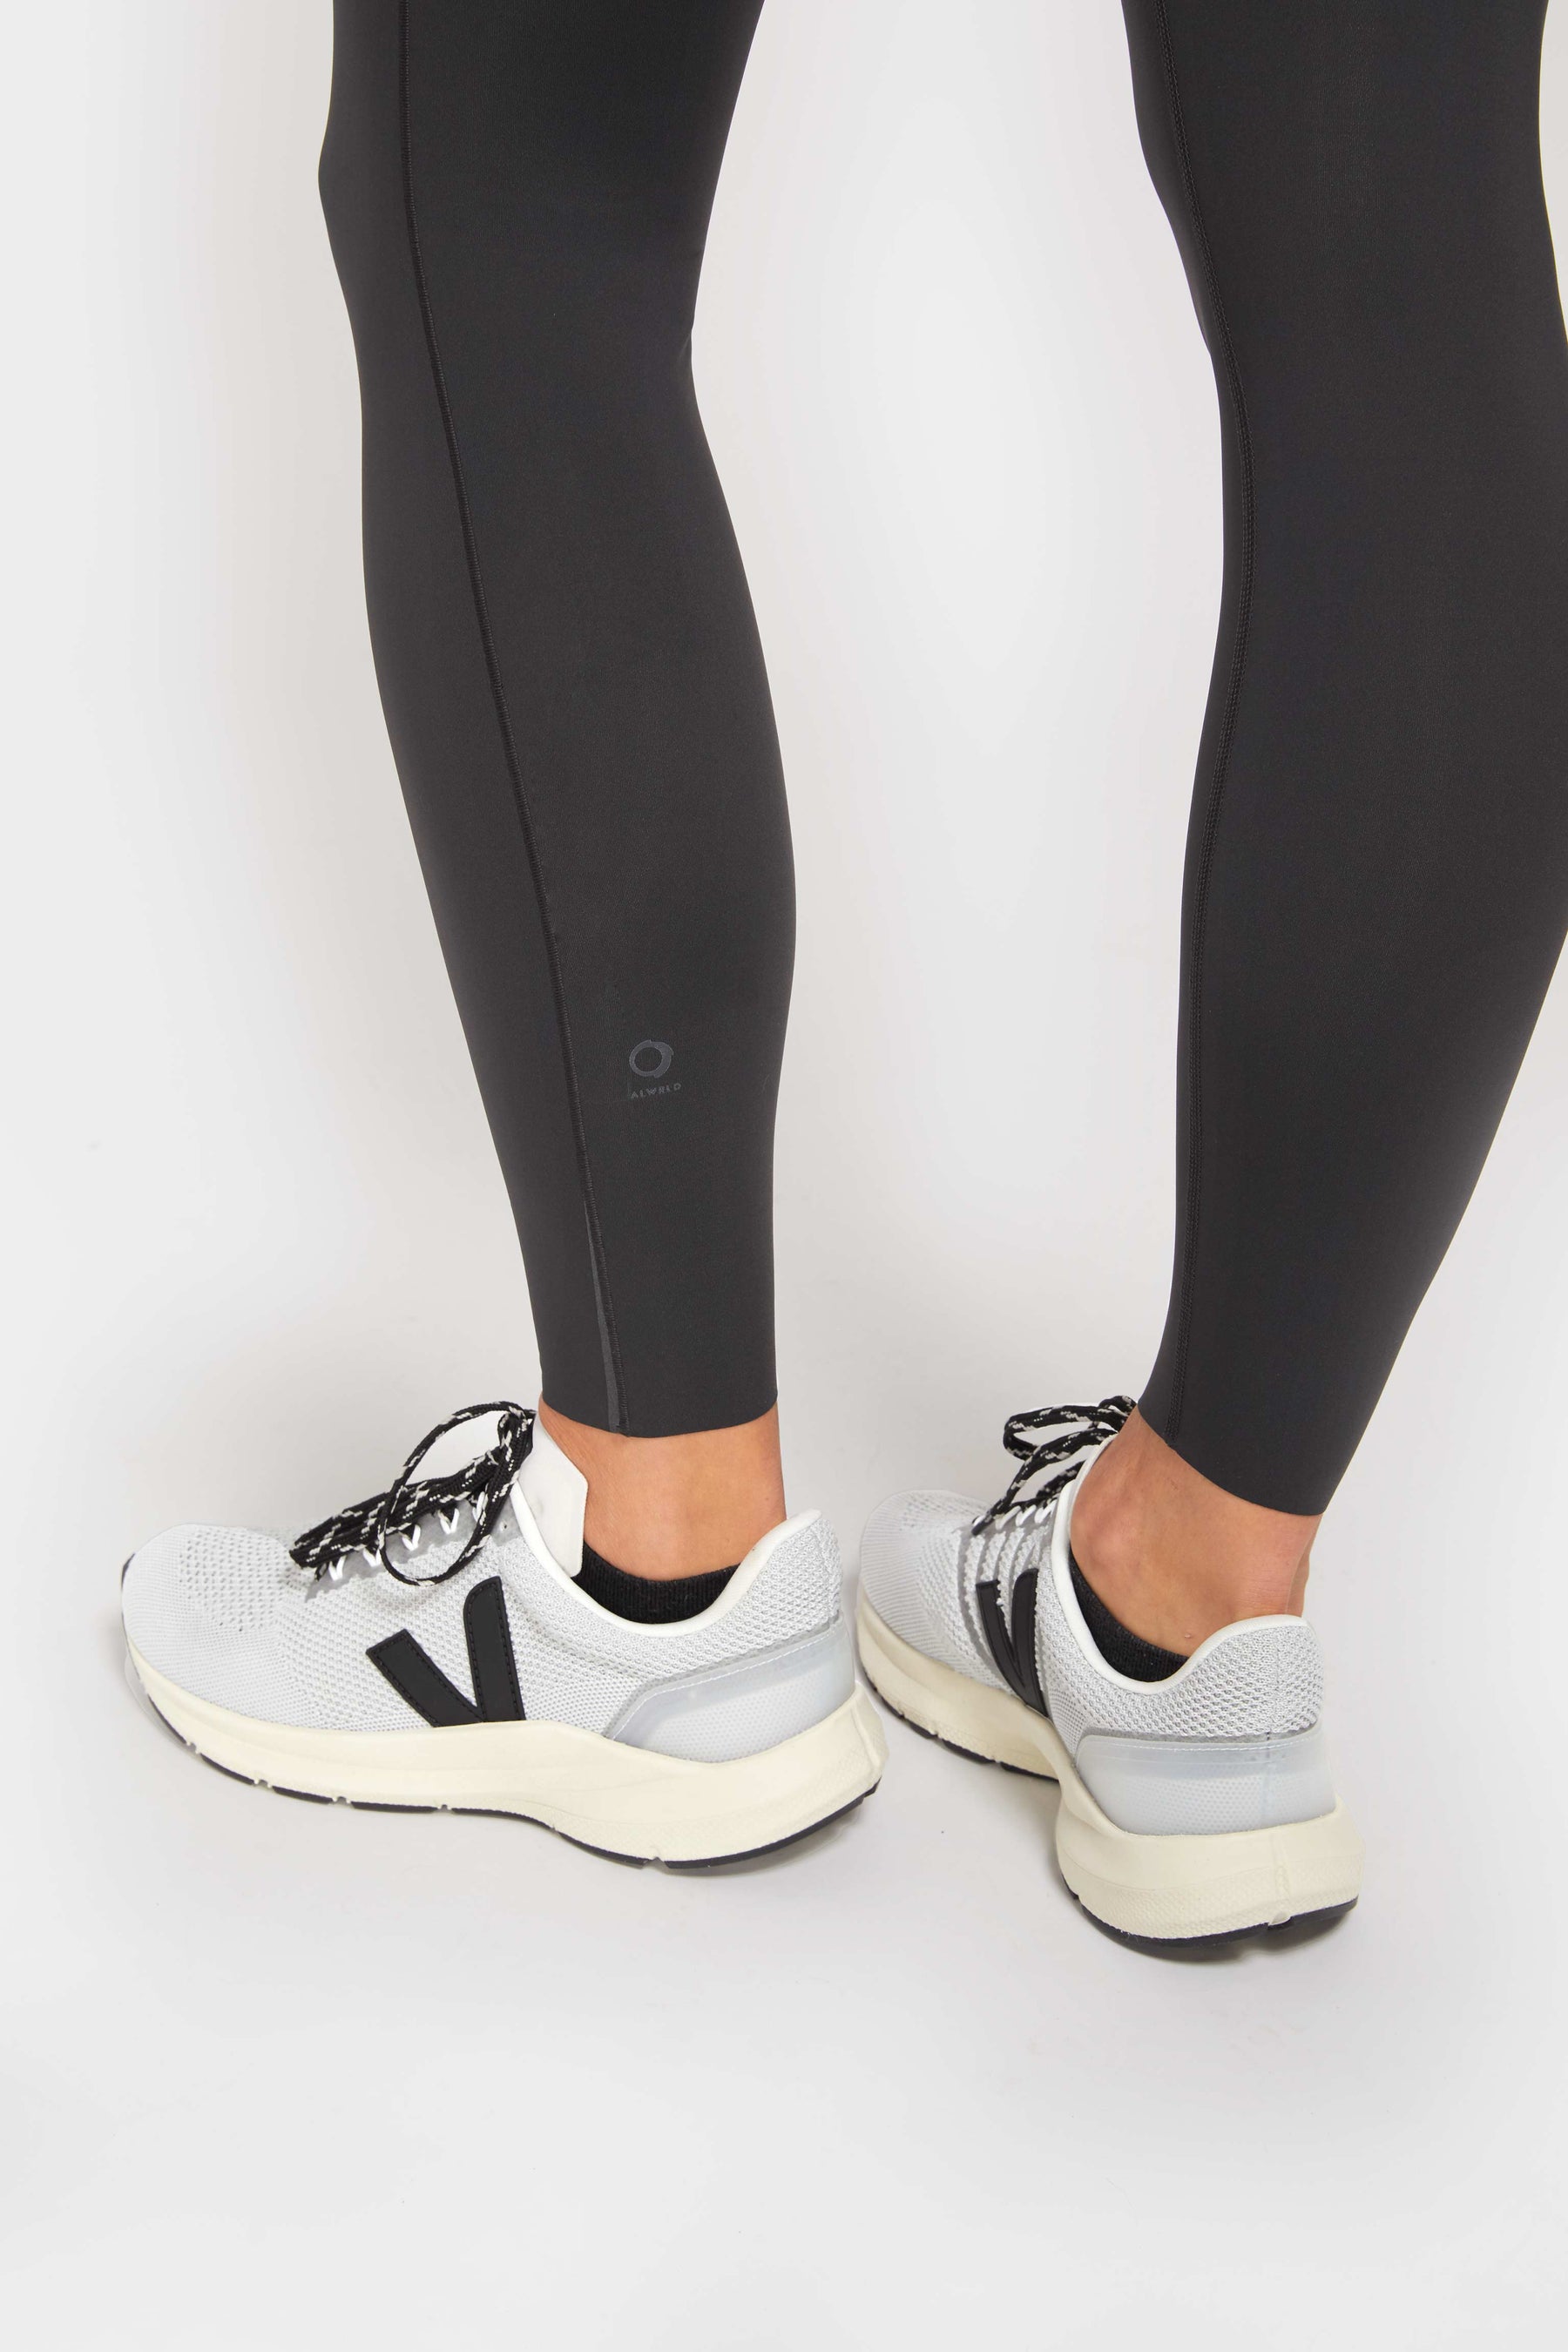 7/8 length leggings for running in black